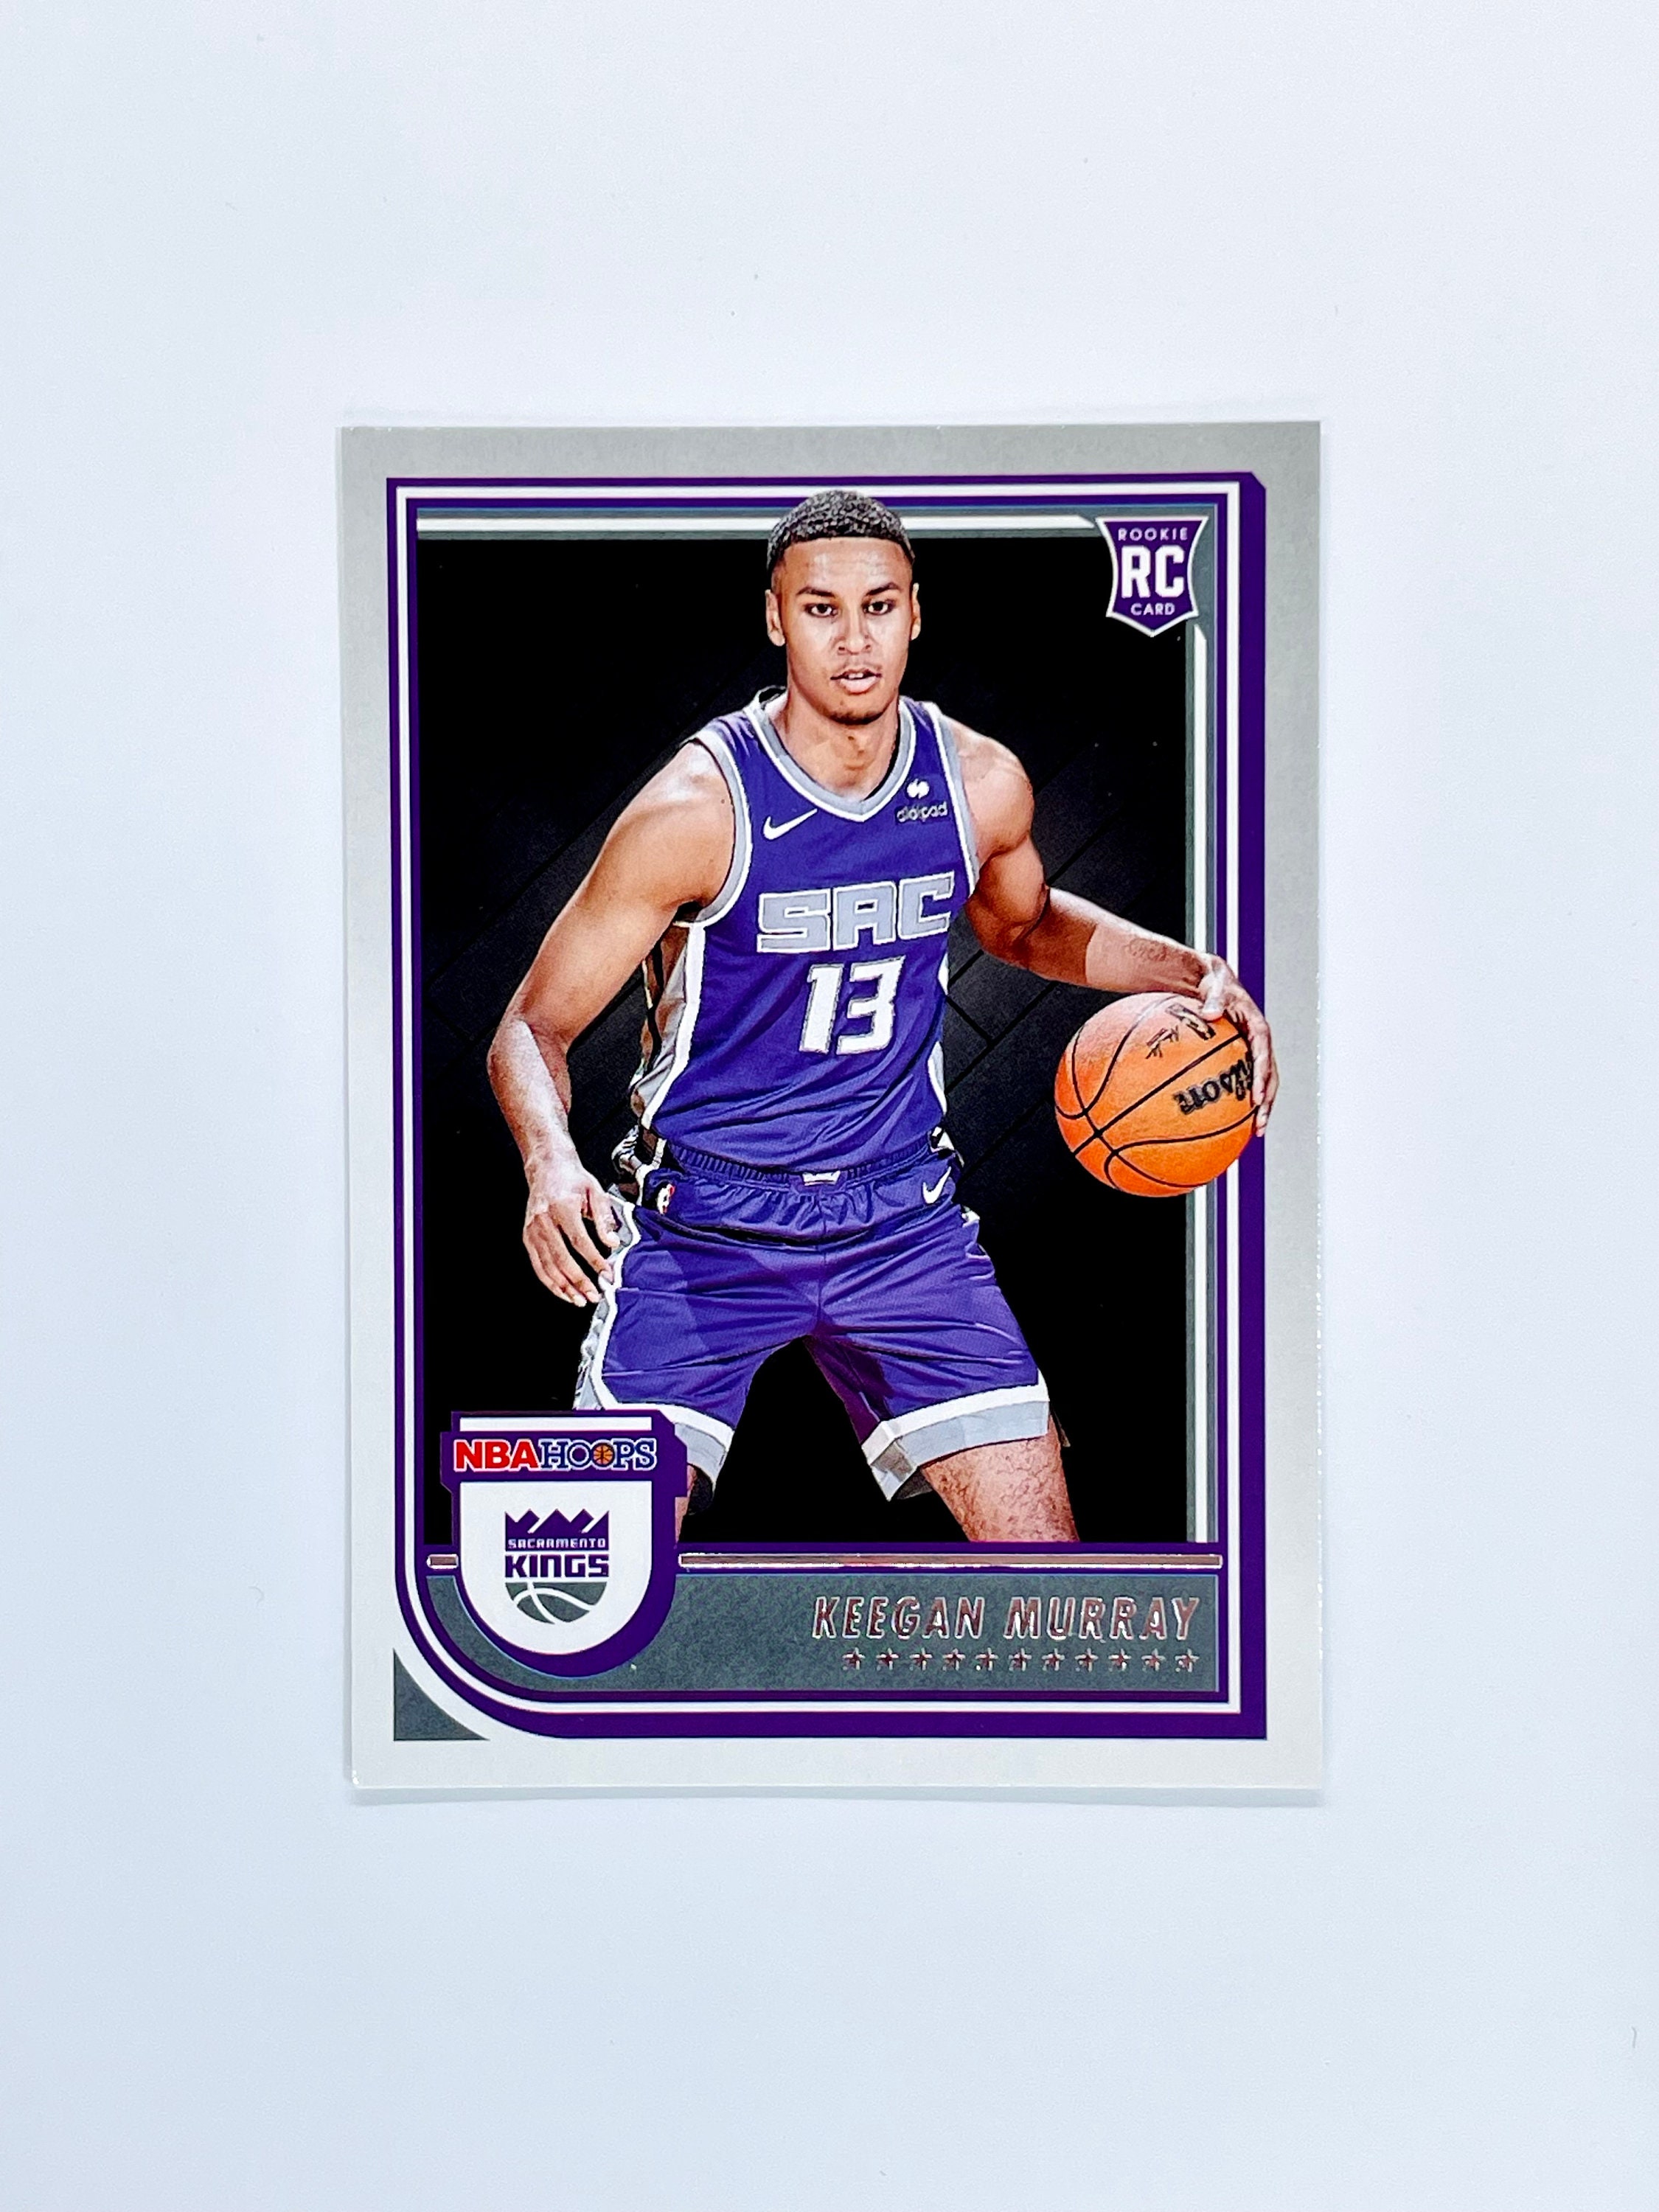 Keegan Murray 13 Sacramento Kings basketball player poster gift